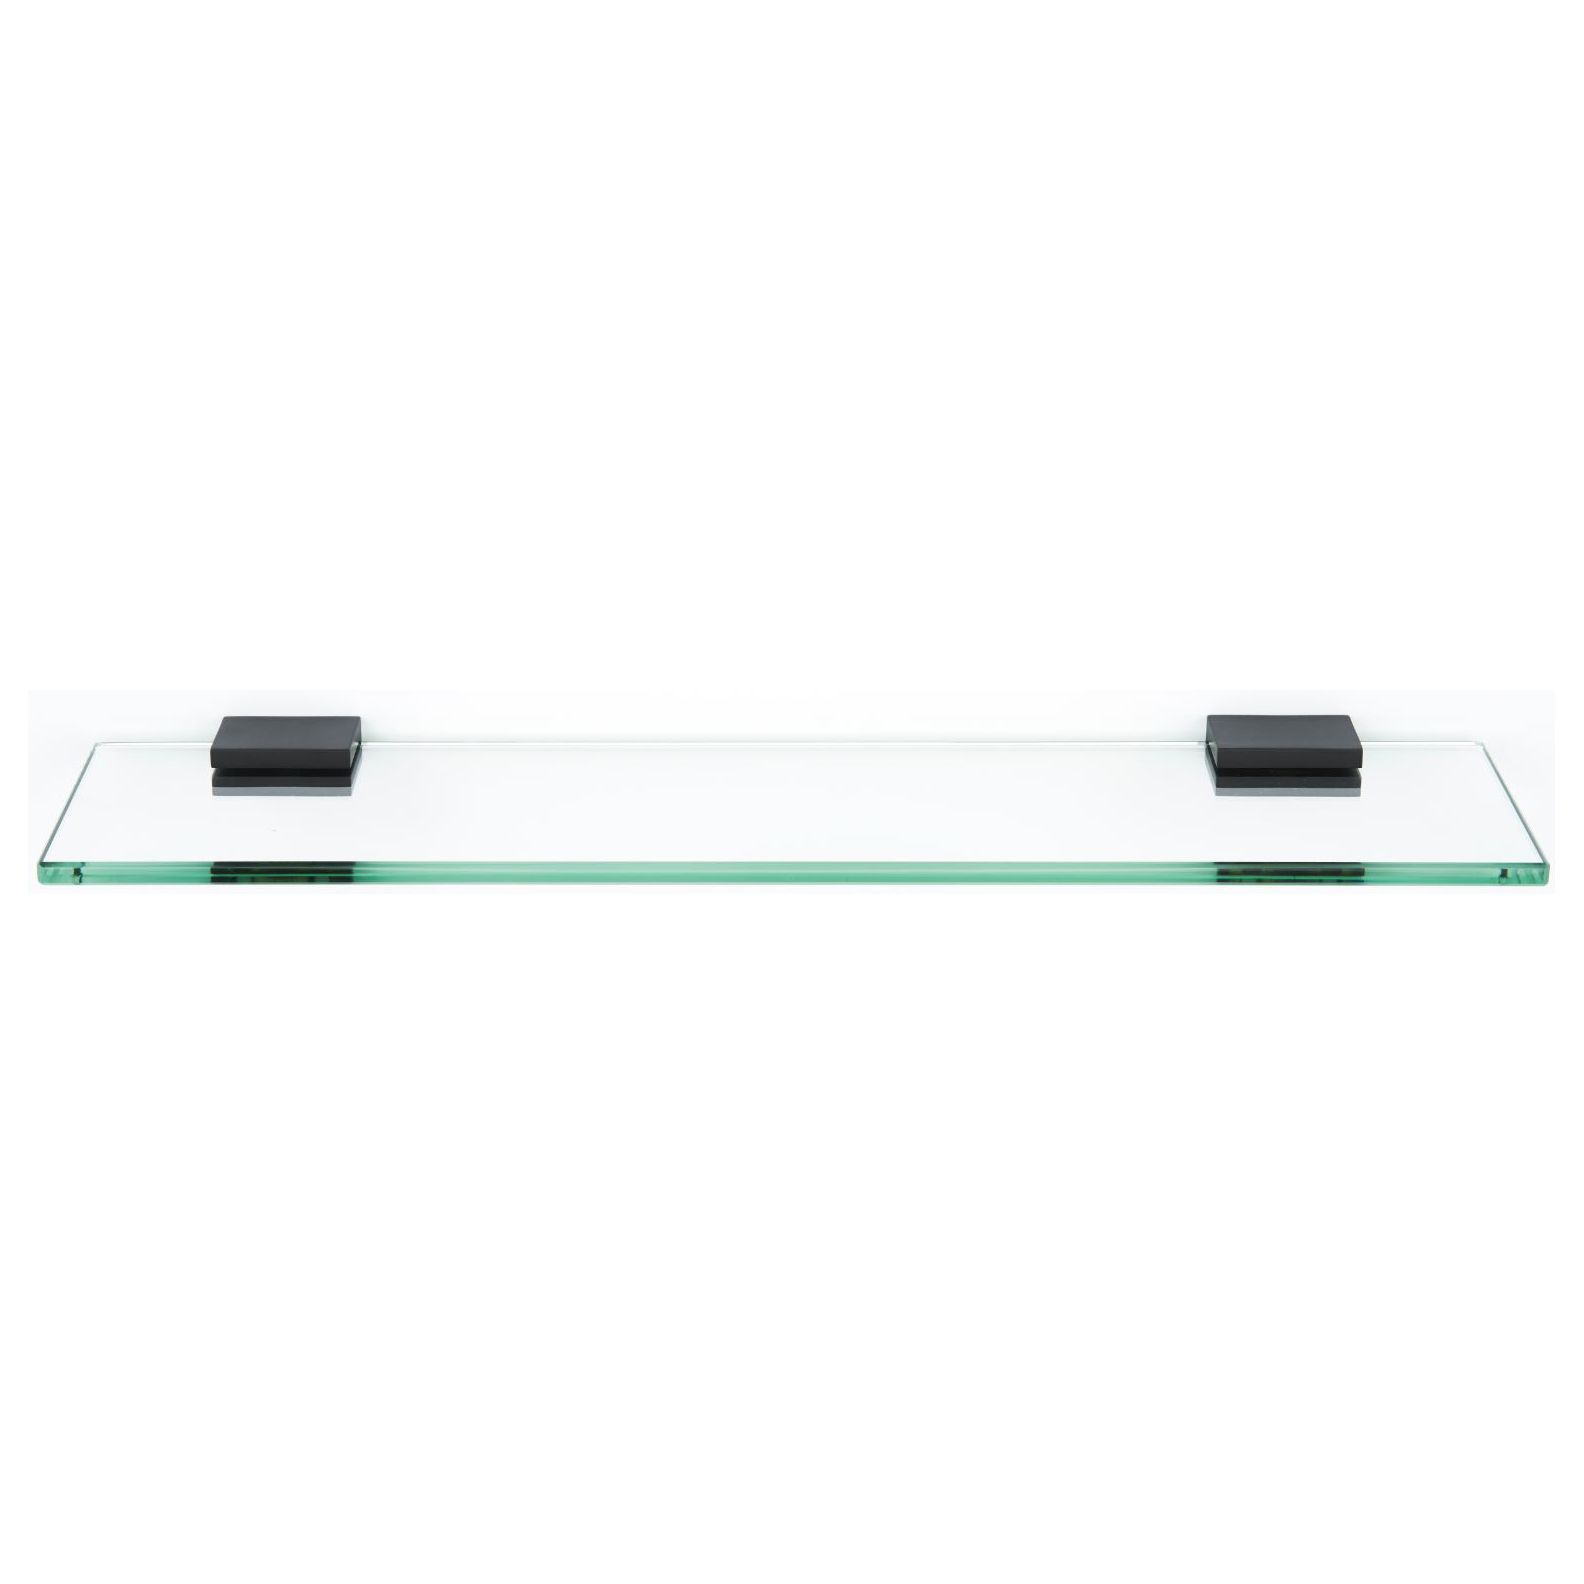 Contemporary II 24" Glass Shelf w/Brackets in Matte Black